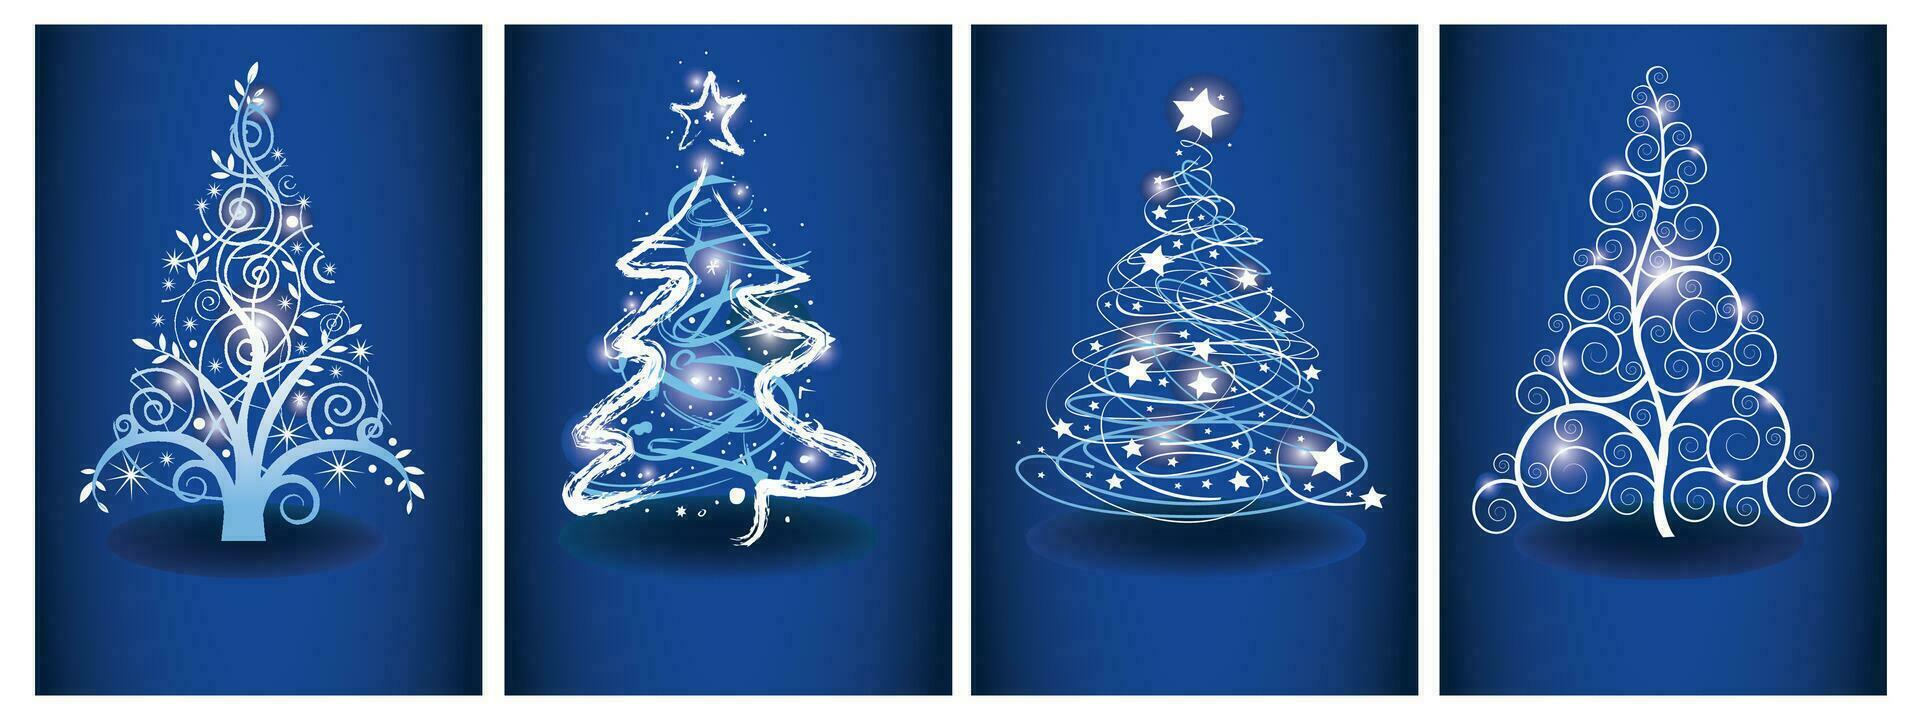 jul kort med blå magi träd. uppsättning av ljus vektor stiliserade jul träd. på blå bakgrund vektor illustration.